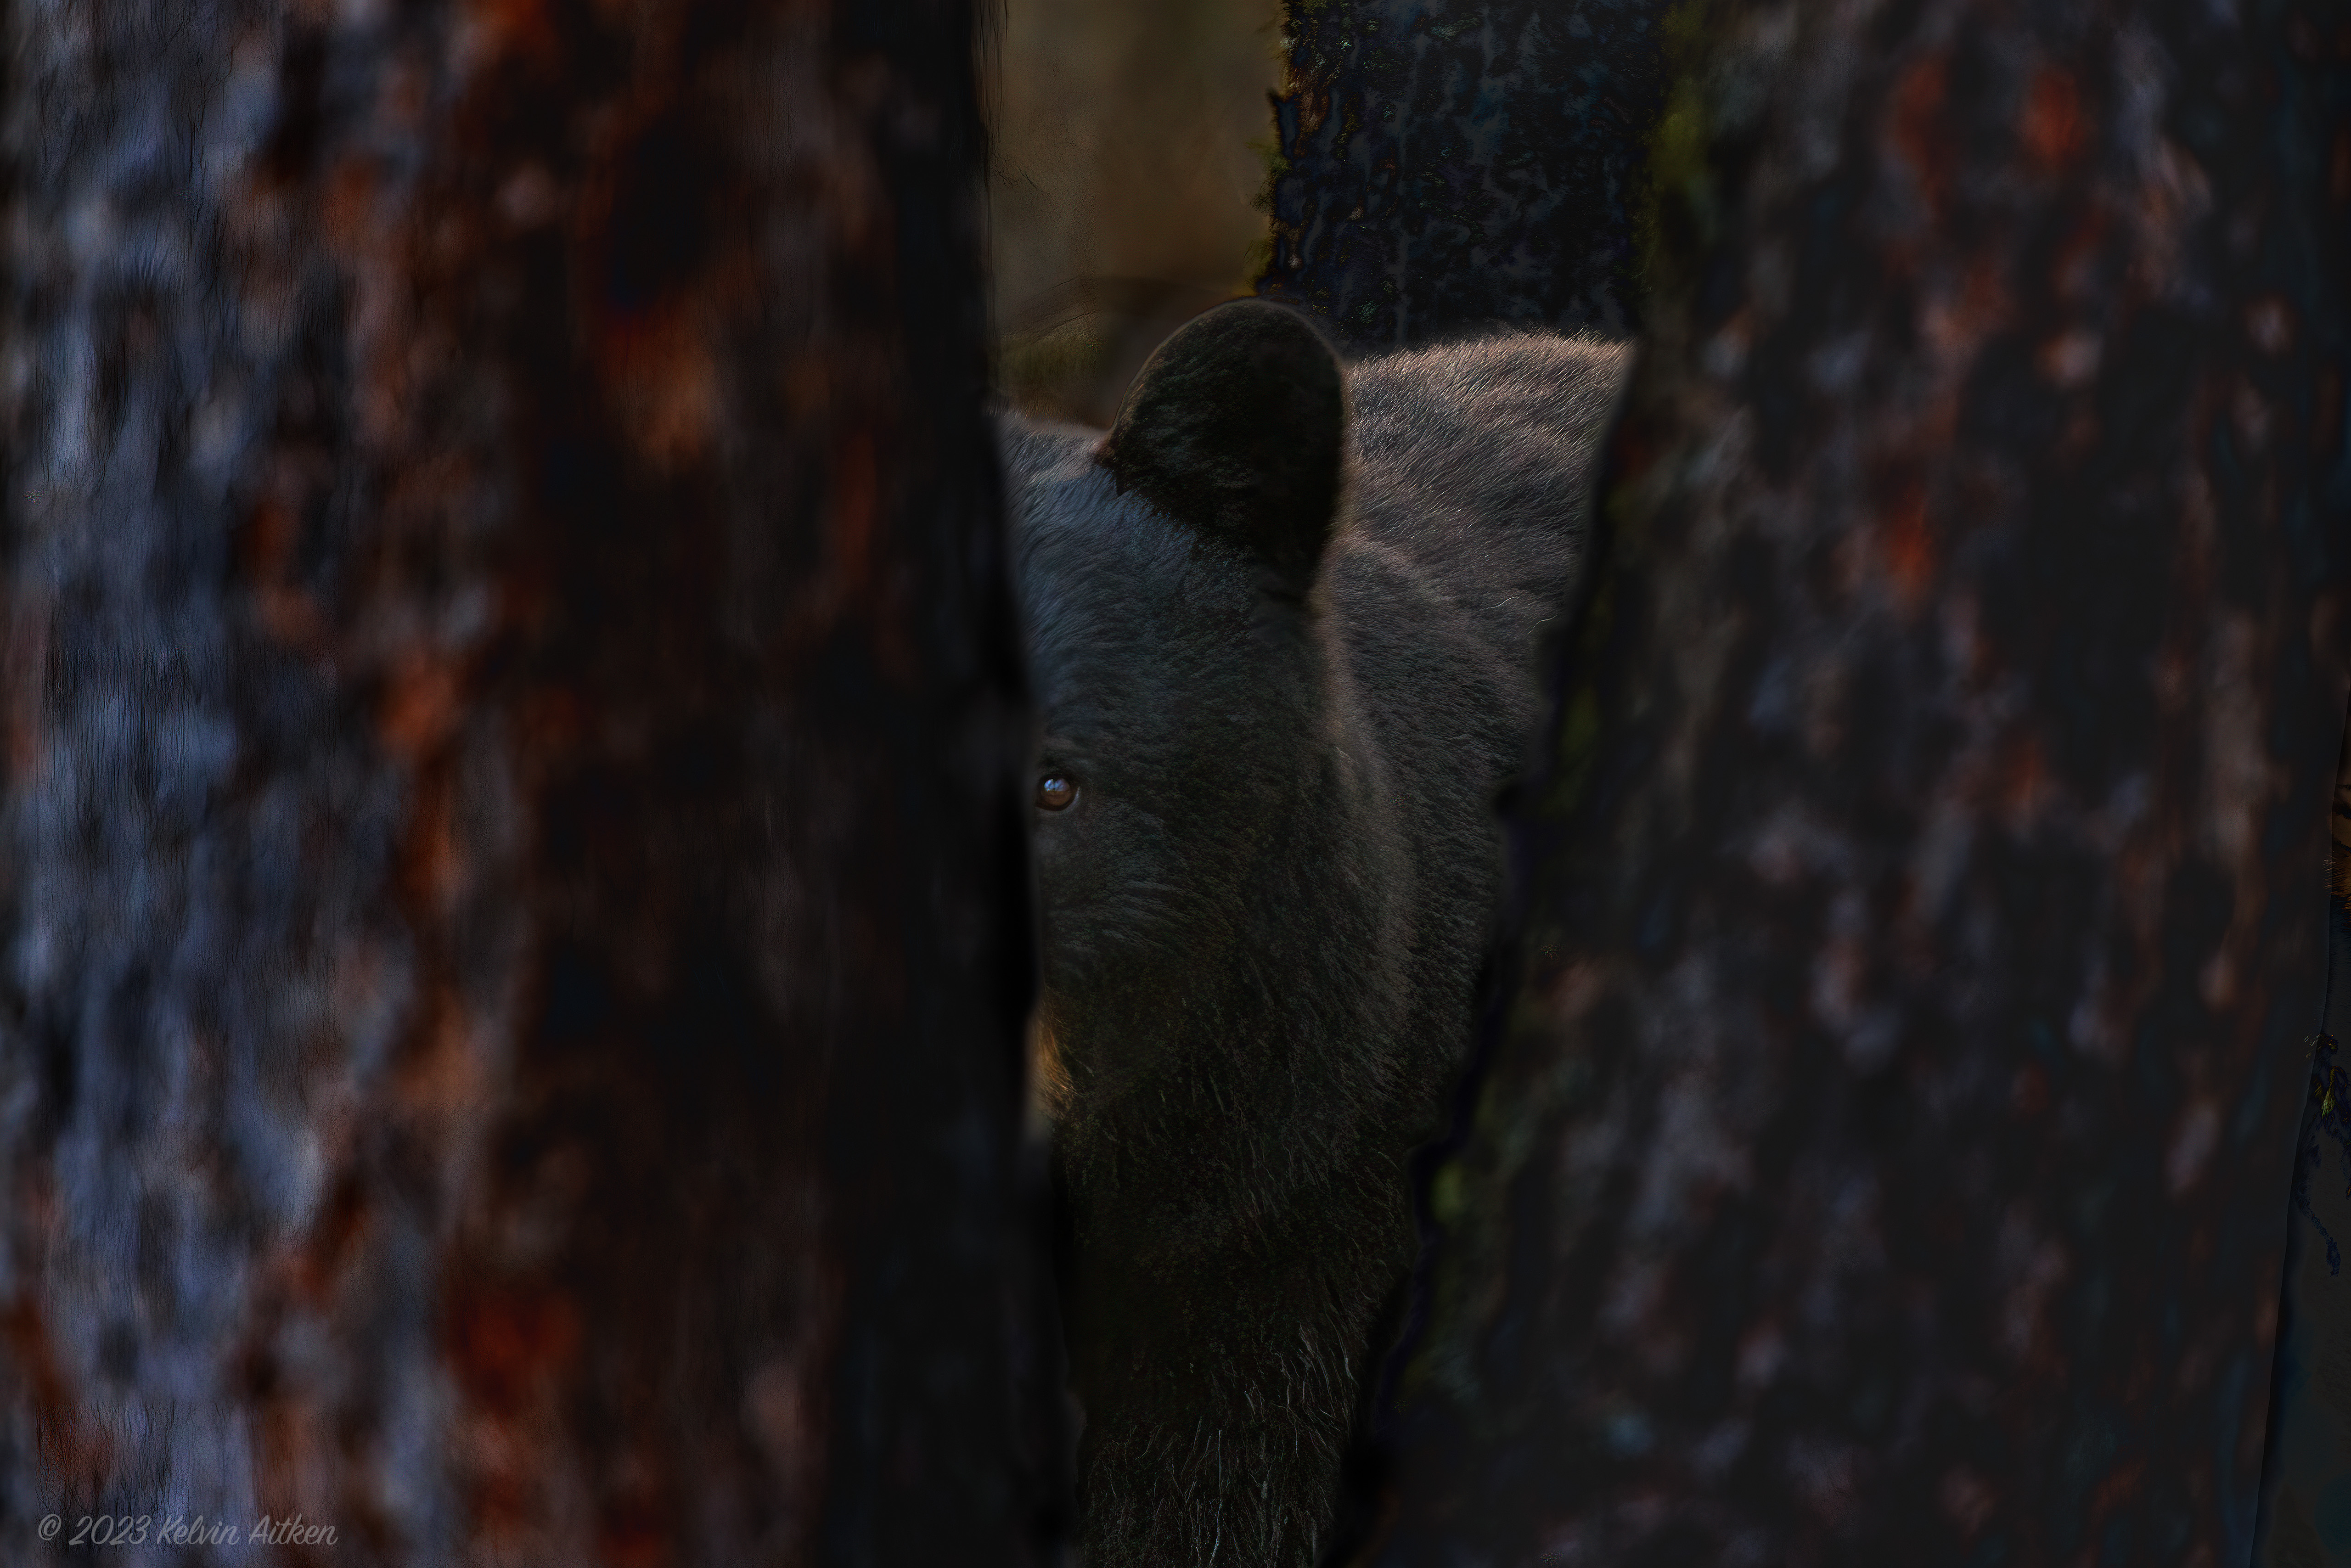 Black bear peering out beetween spruce trees, low key